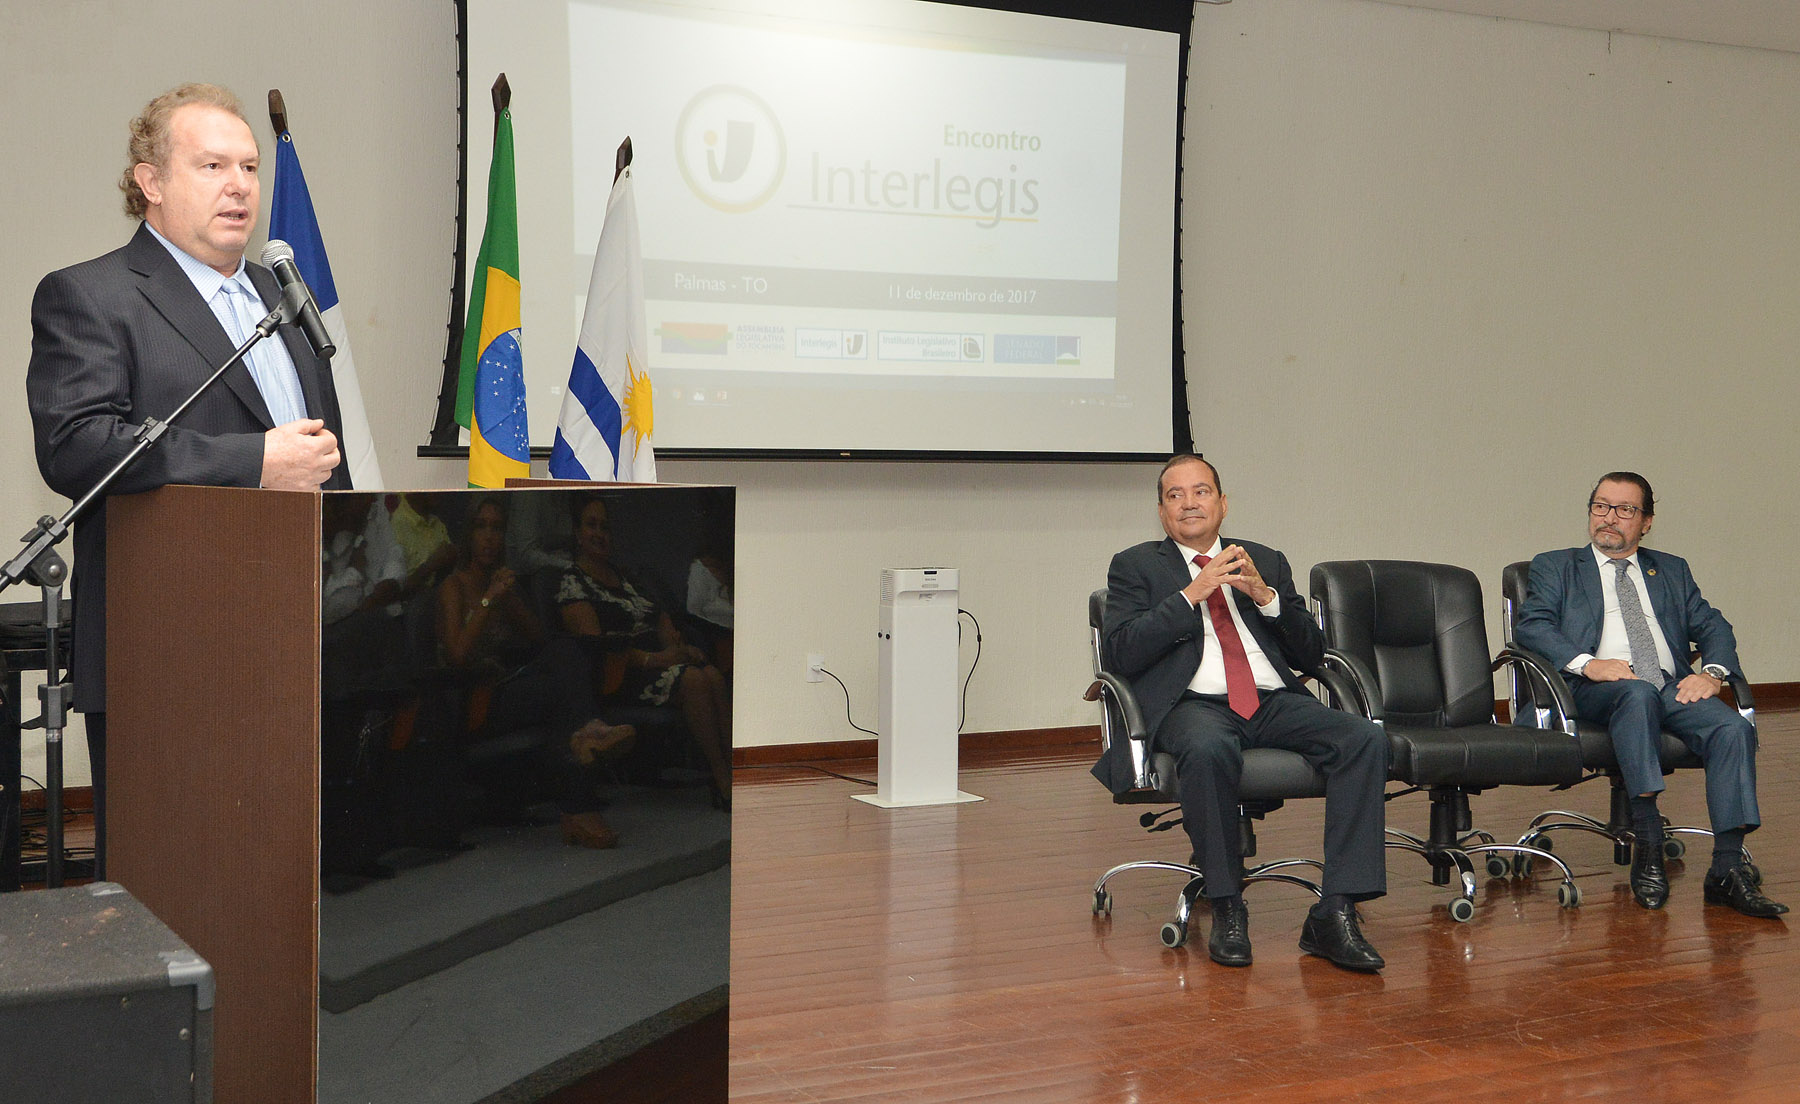 Senador Vicentinho Alves defende transparência do poder legislativo em Encontro do Interlegis